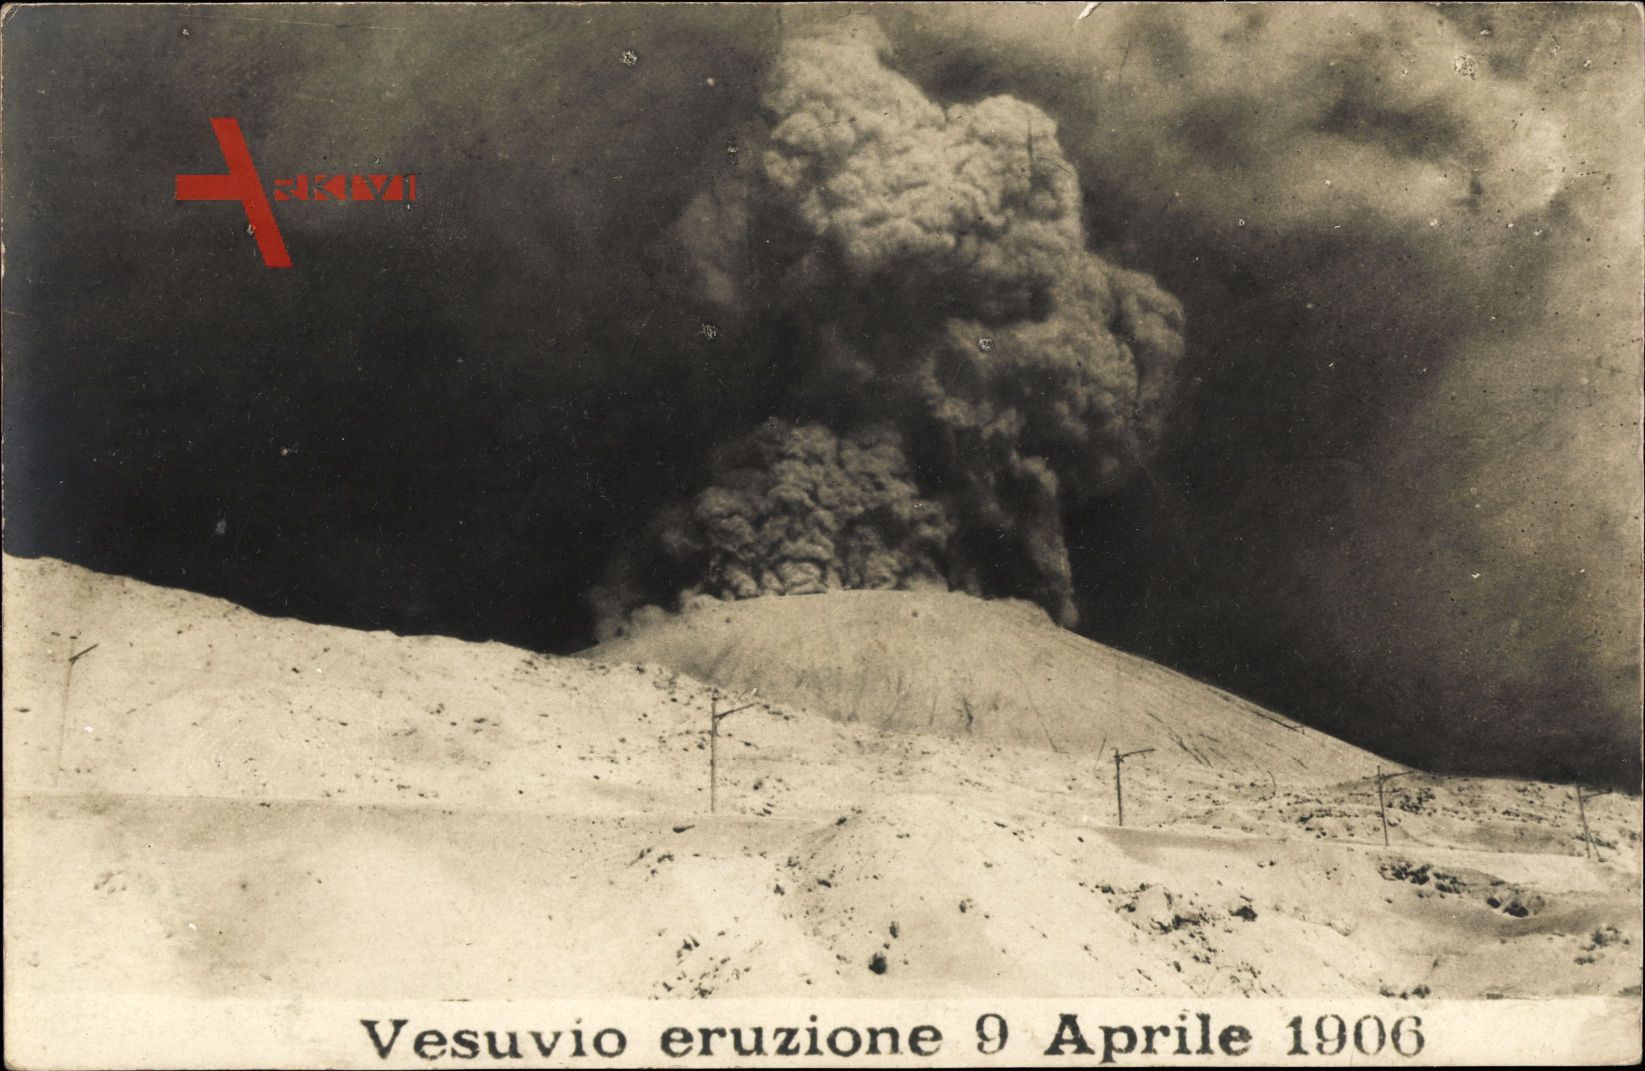 Vesuvio eruzione 9 Aprile 1906, Vulkanausbruch, Aschewolke, Vesuv